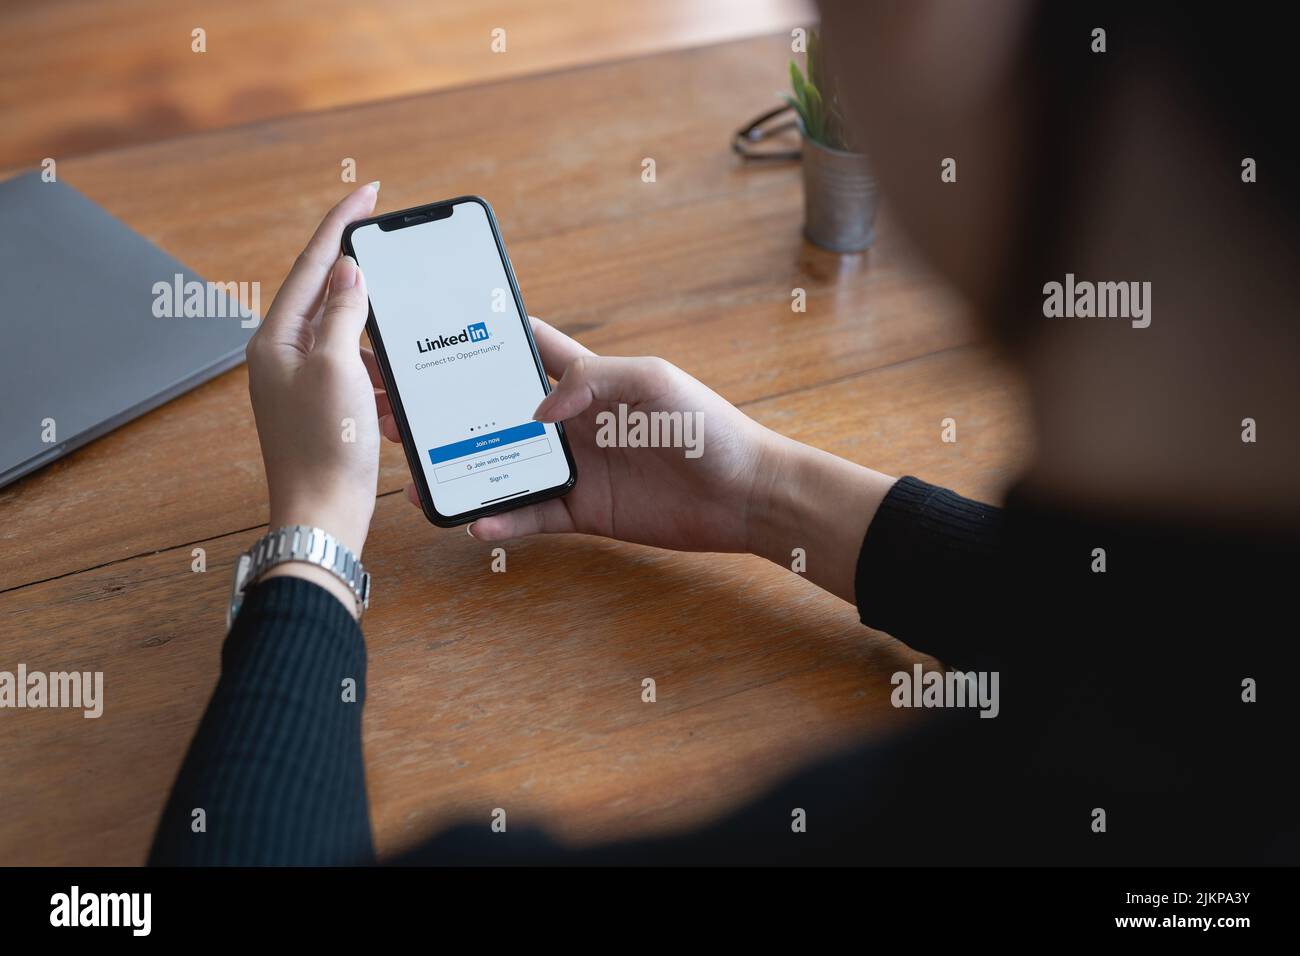 CHIANG MAI,THAÏLANDE - 29 JUIN 2022 : Femme tenant iPhone ouvrant Linkedin app. LinkedIn est un site de réseaux sociaux spécialisé dans les réseaux d'entreprise Banque D'Images